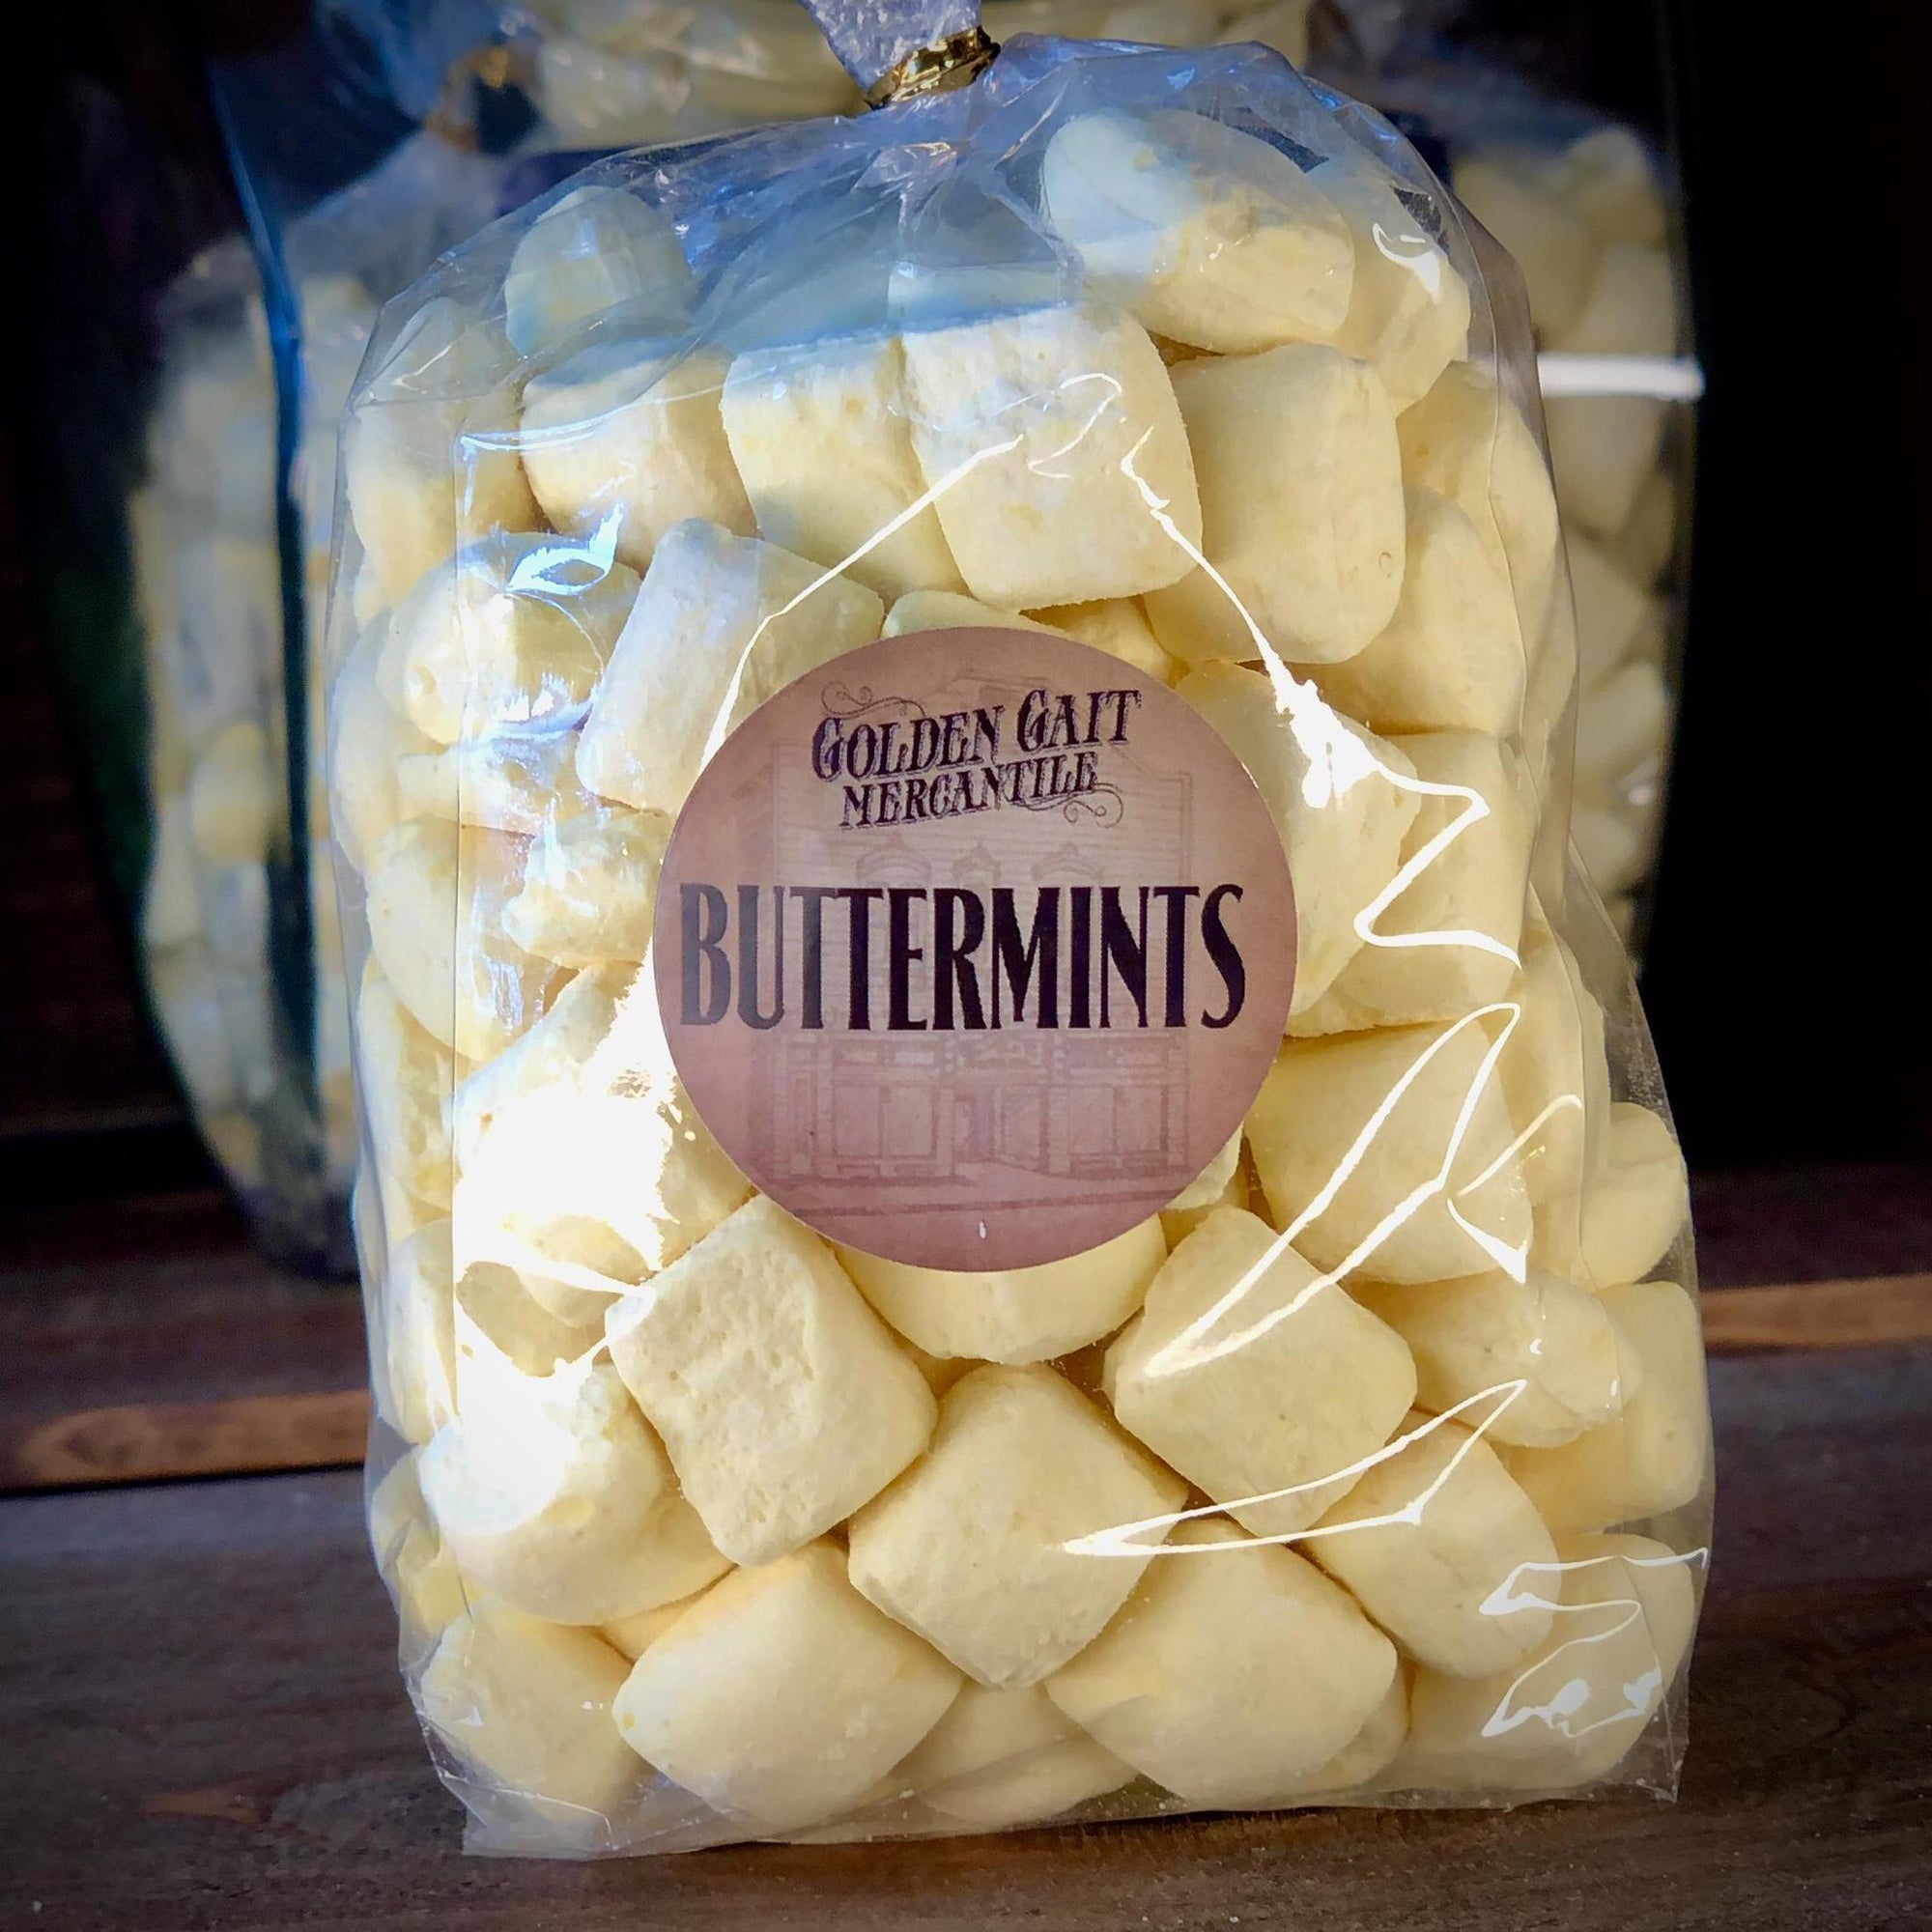 Buttermints By The Golden Gait Mercantile